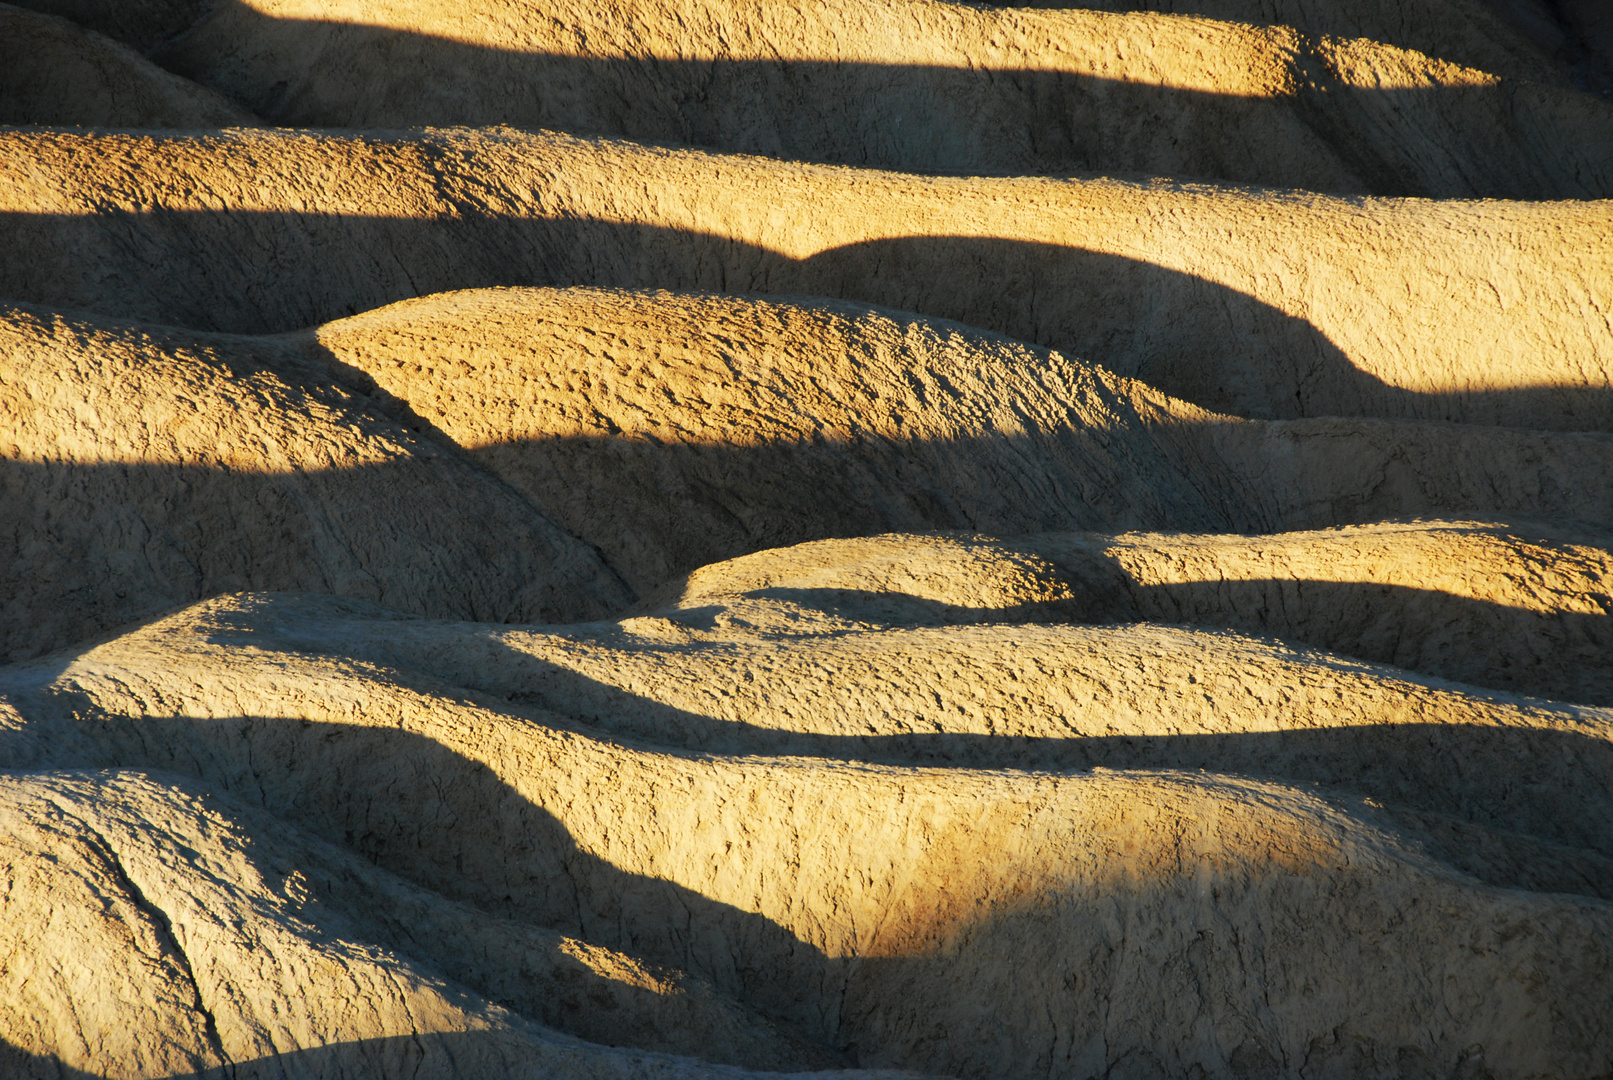 Erdstrukturen im Death Valley bei Sonnenaufgang